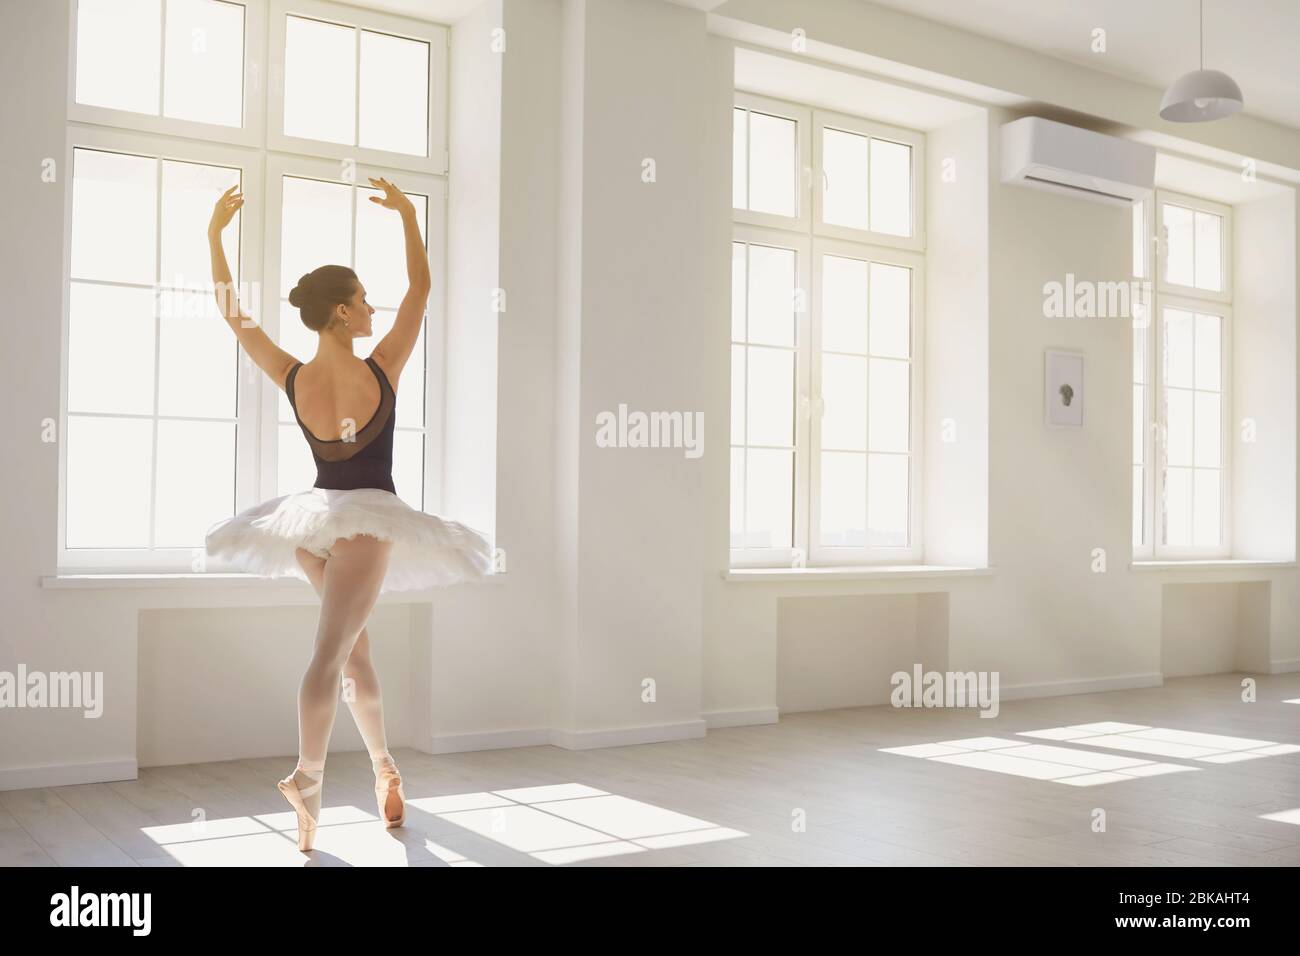 Ballerine. La jeune danseuse de ballet élégante répète une performance dans un studio blanc avec des fenêtres. Banque D'Images